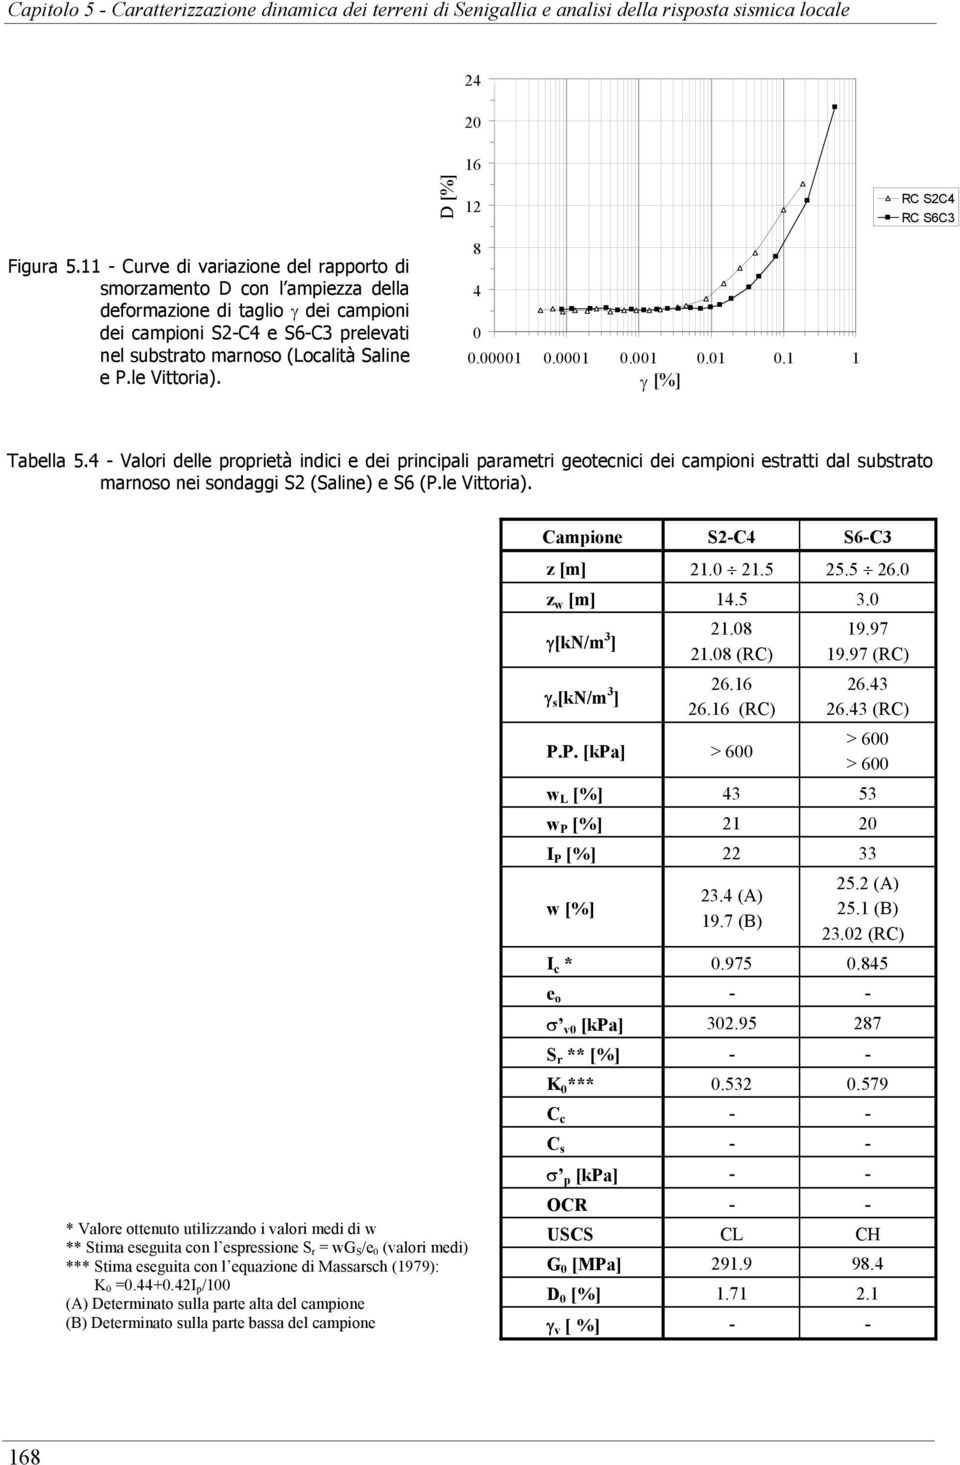 le Vittoria). 8 4.1.1.1.1.1 1 γ [%] Tabella 5.4 - Valori delle proprietà indici e dei principali parametri geotecnici dei campioni estratti dal substrato marnoso nei sondaggi S2 (Saline) e S6 (P.